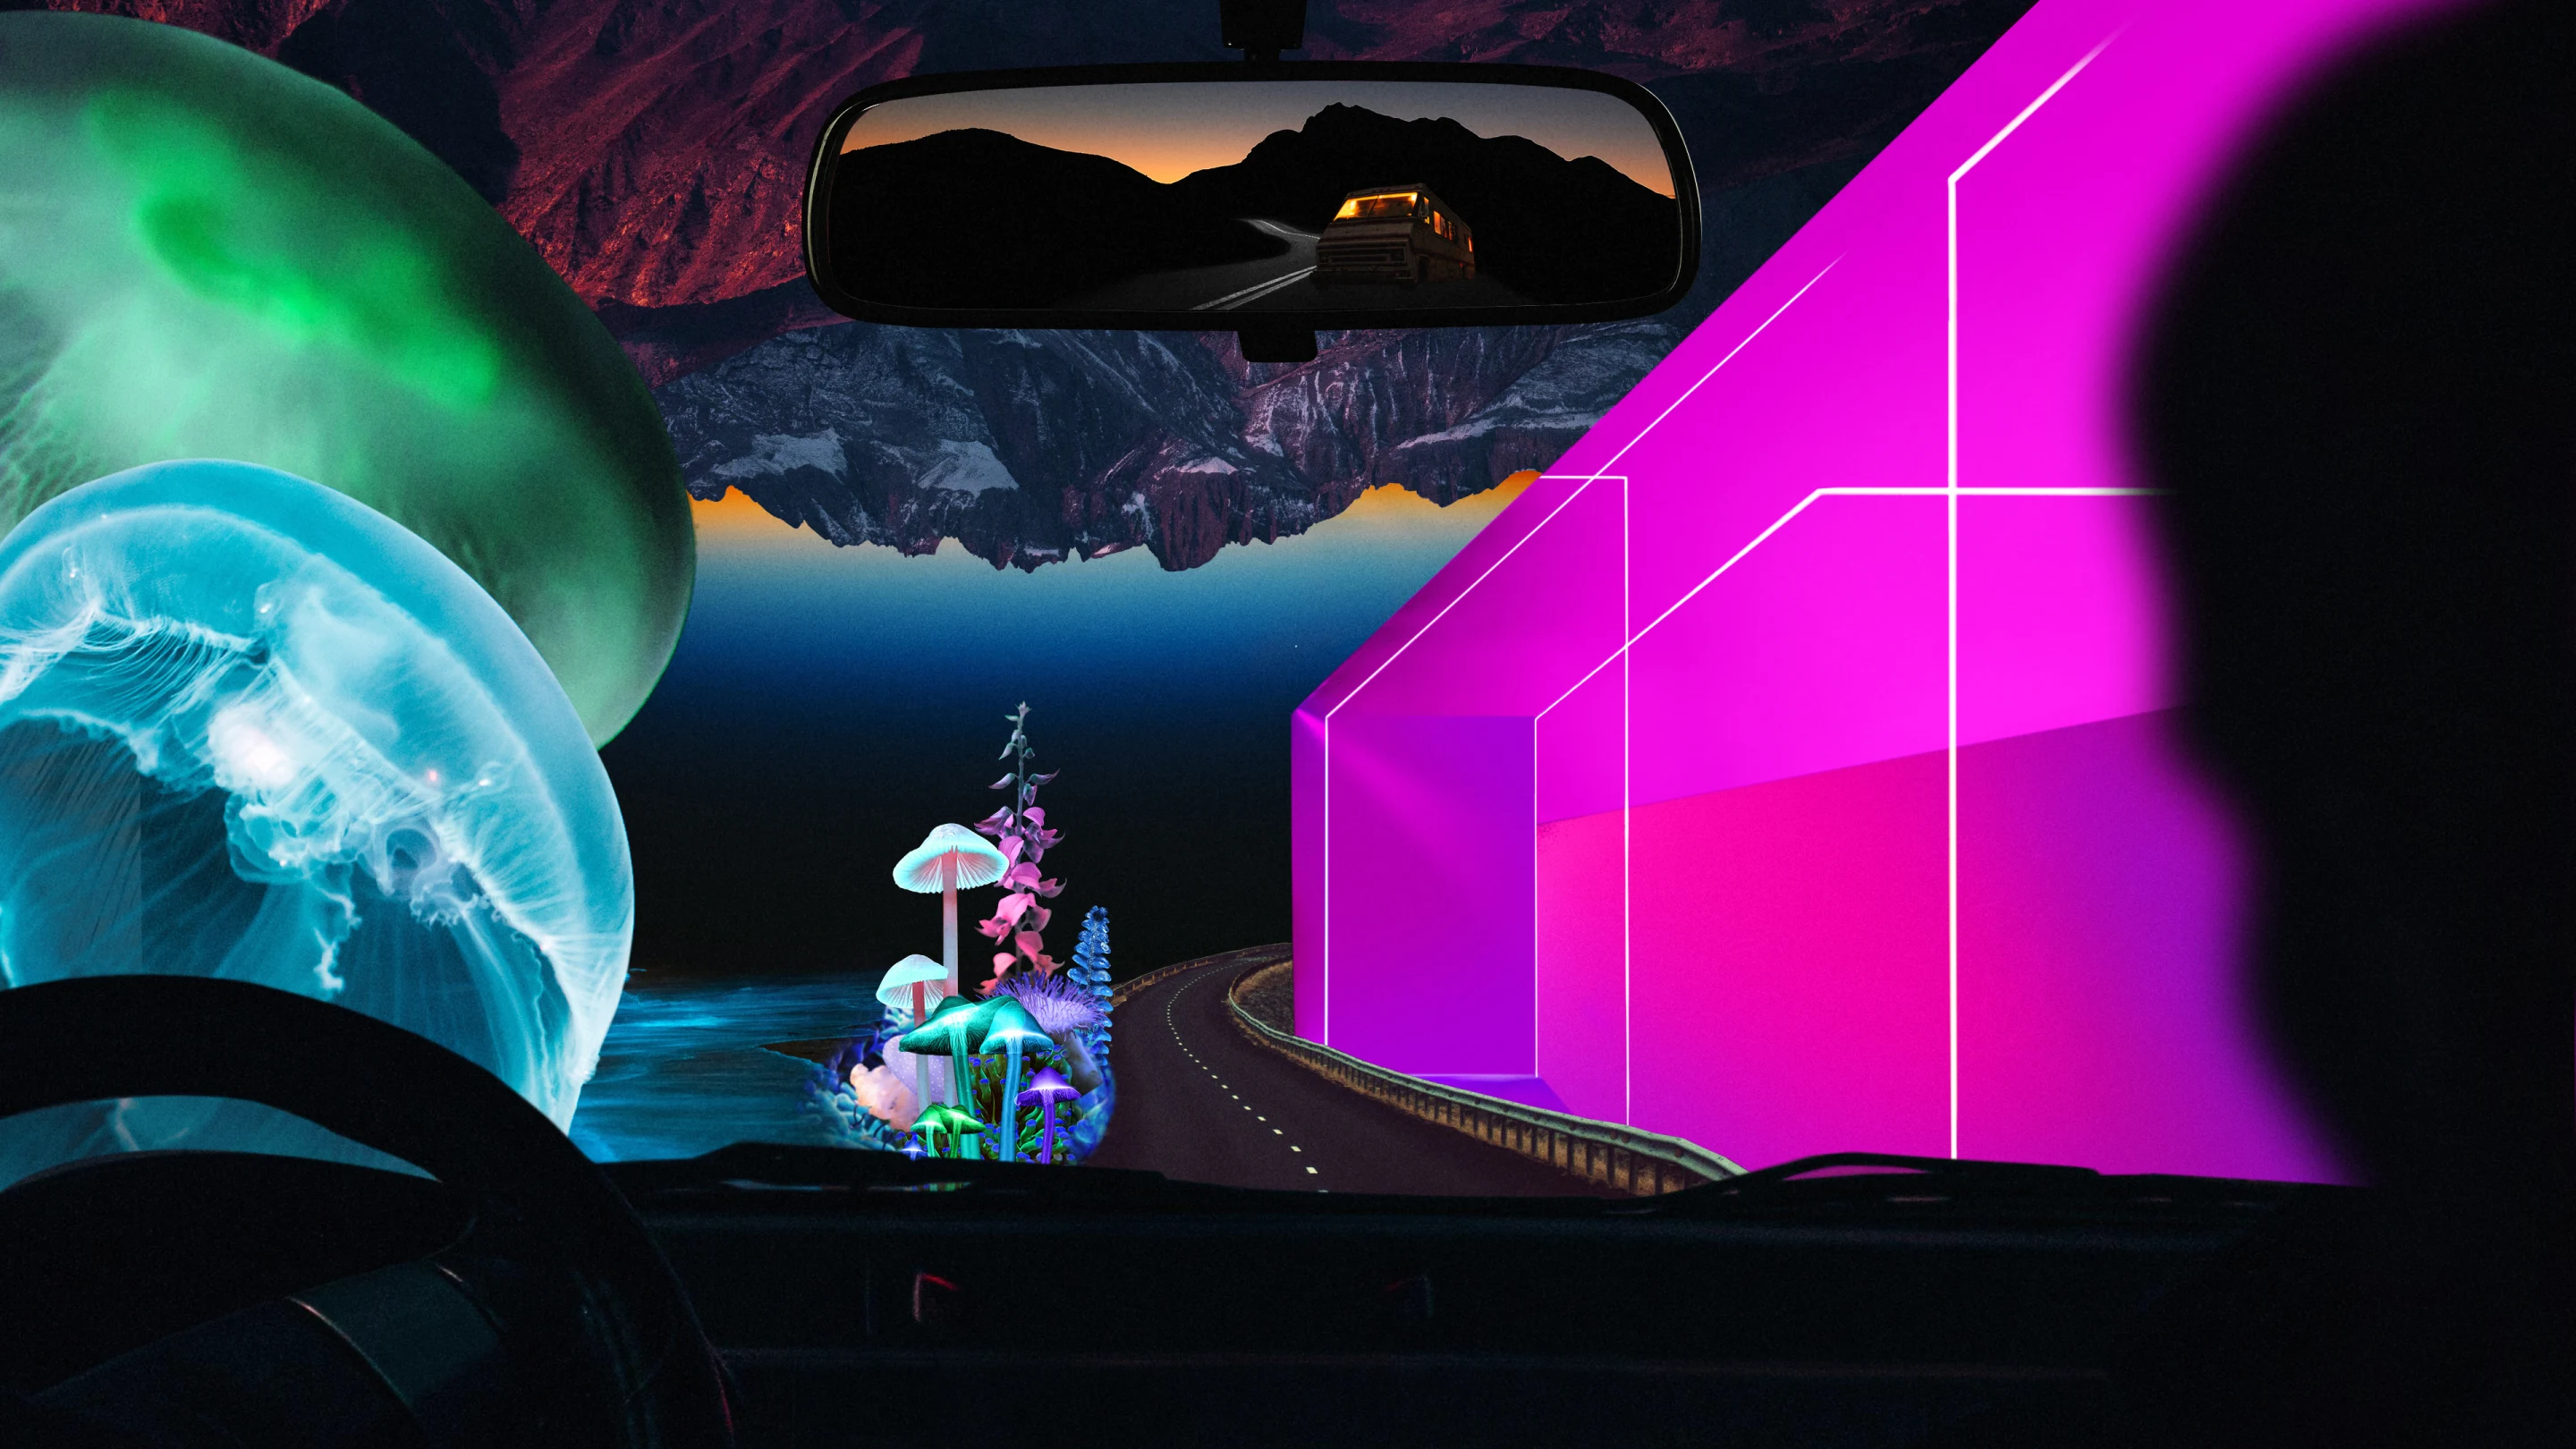 Eine bunte, lebhafte Collage durch die Windschutzscheibe eines Autos. Links eine große Qualle, rechts eine pinke geometrische Form. In der Ferne dunkle Bergformationen und große Pilze im Comic-Stil.